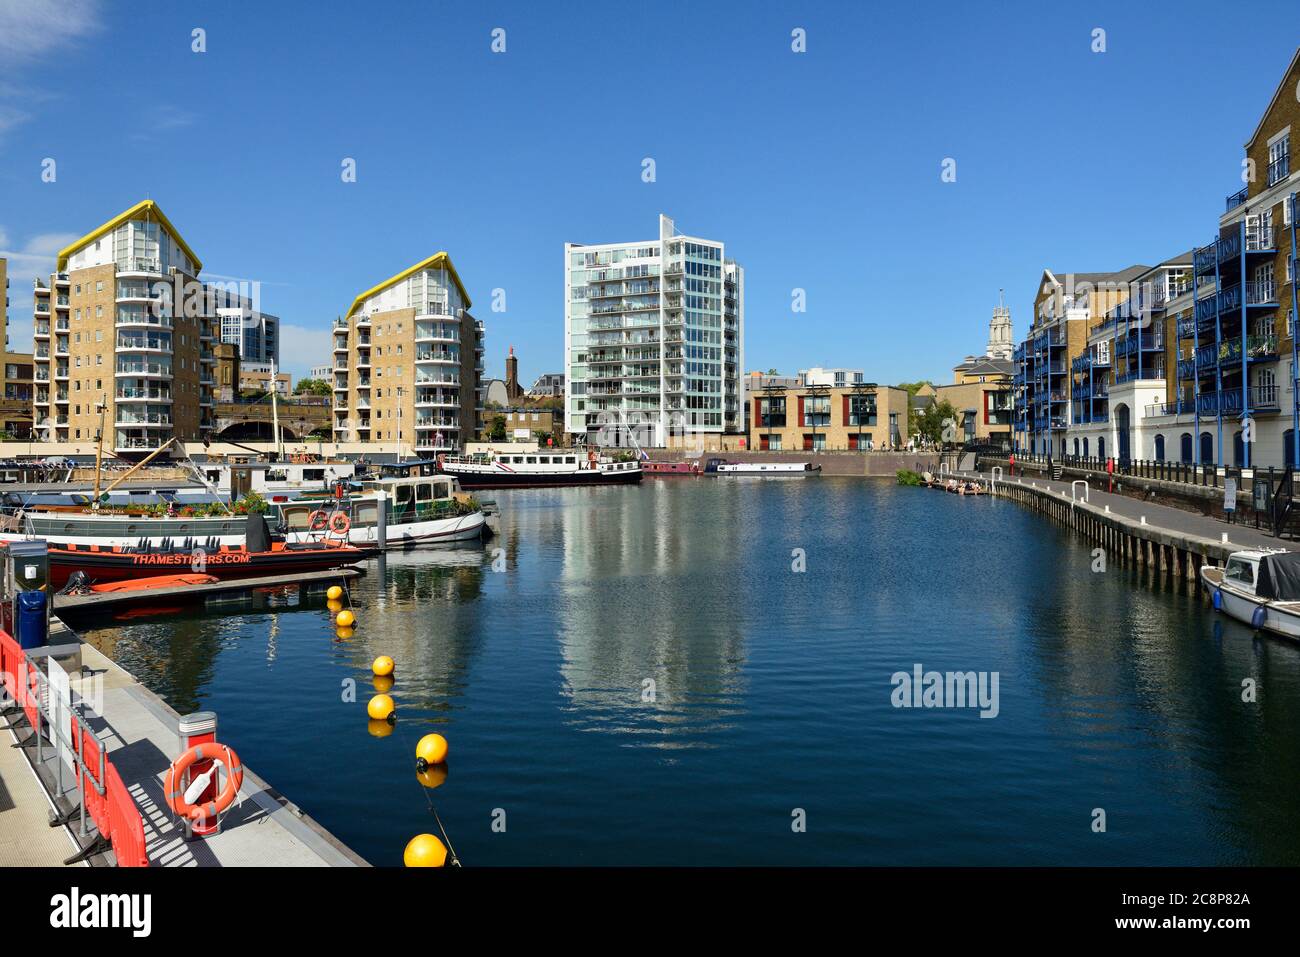 Limehouse Basin marina, Limehouse, East London, United Kingdom Stock Photo